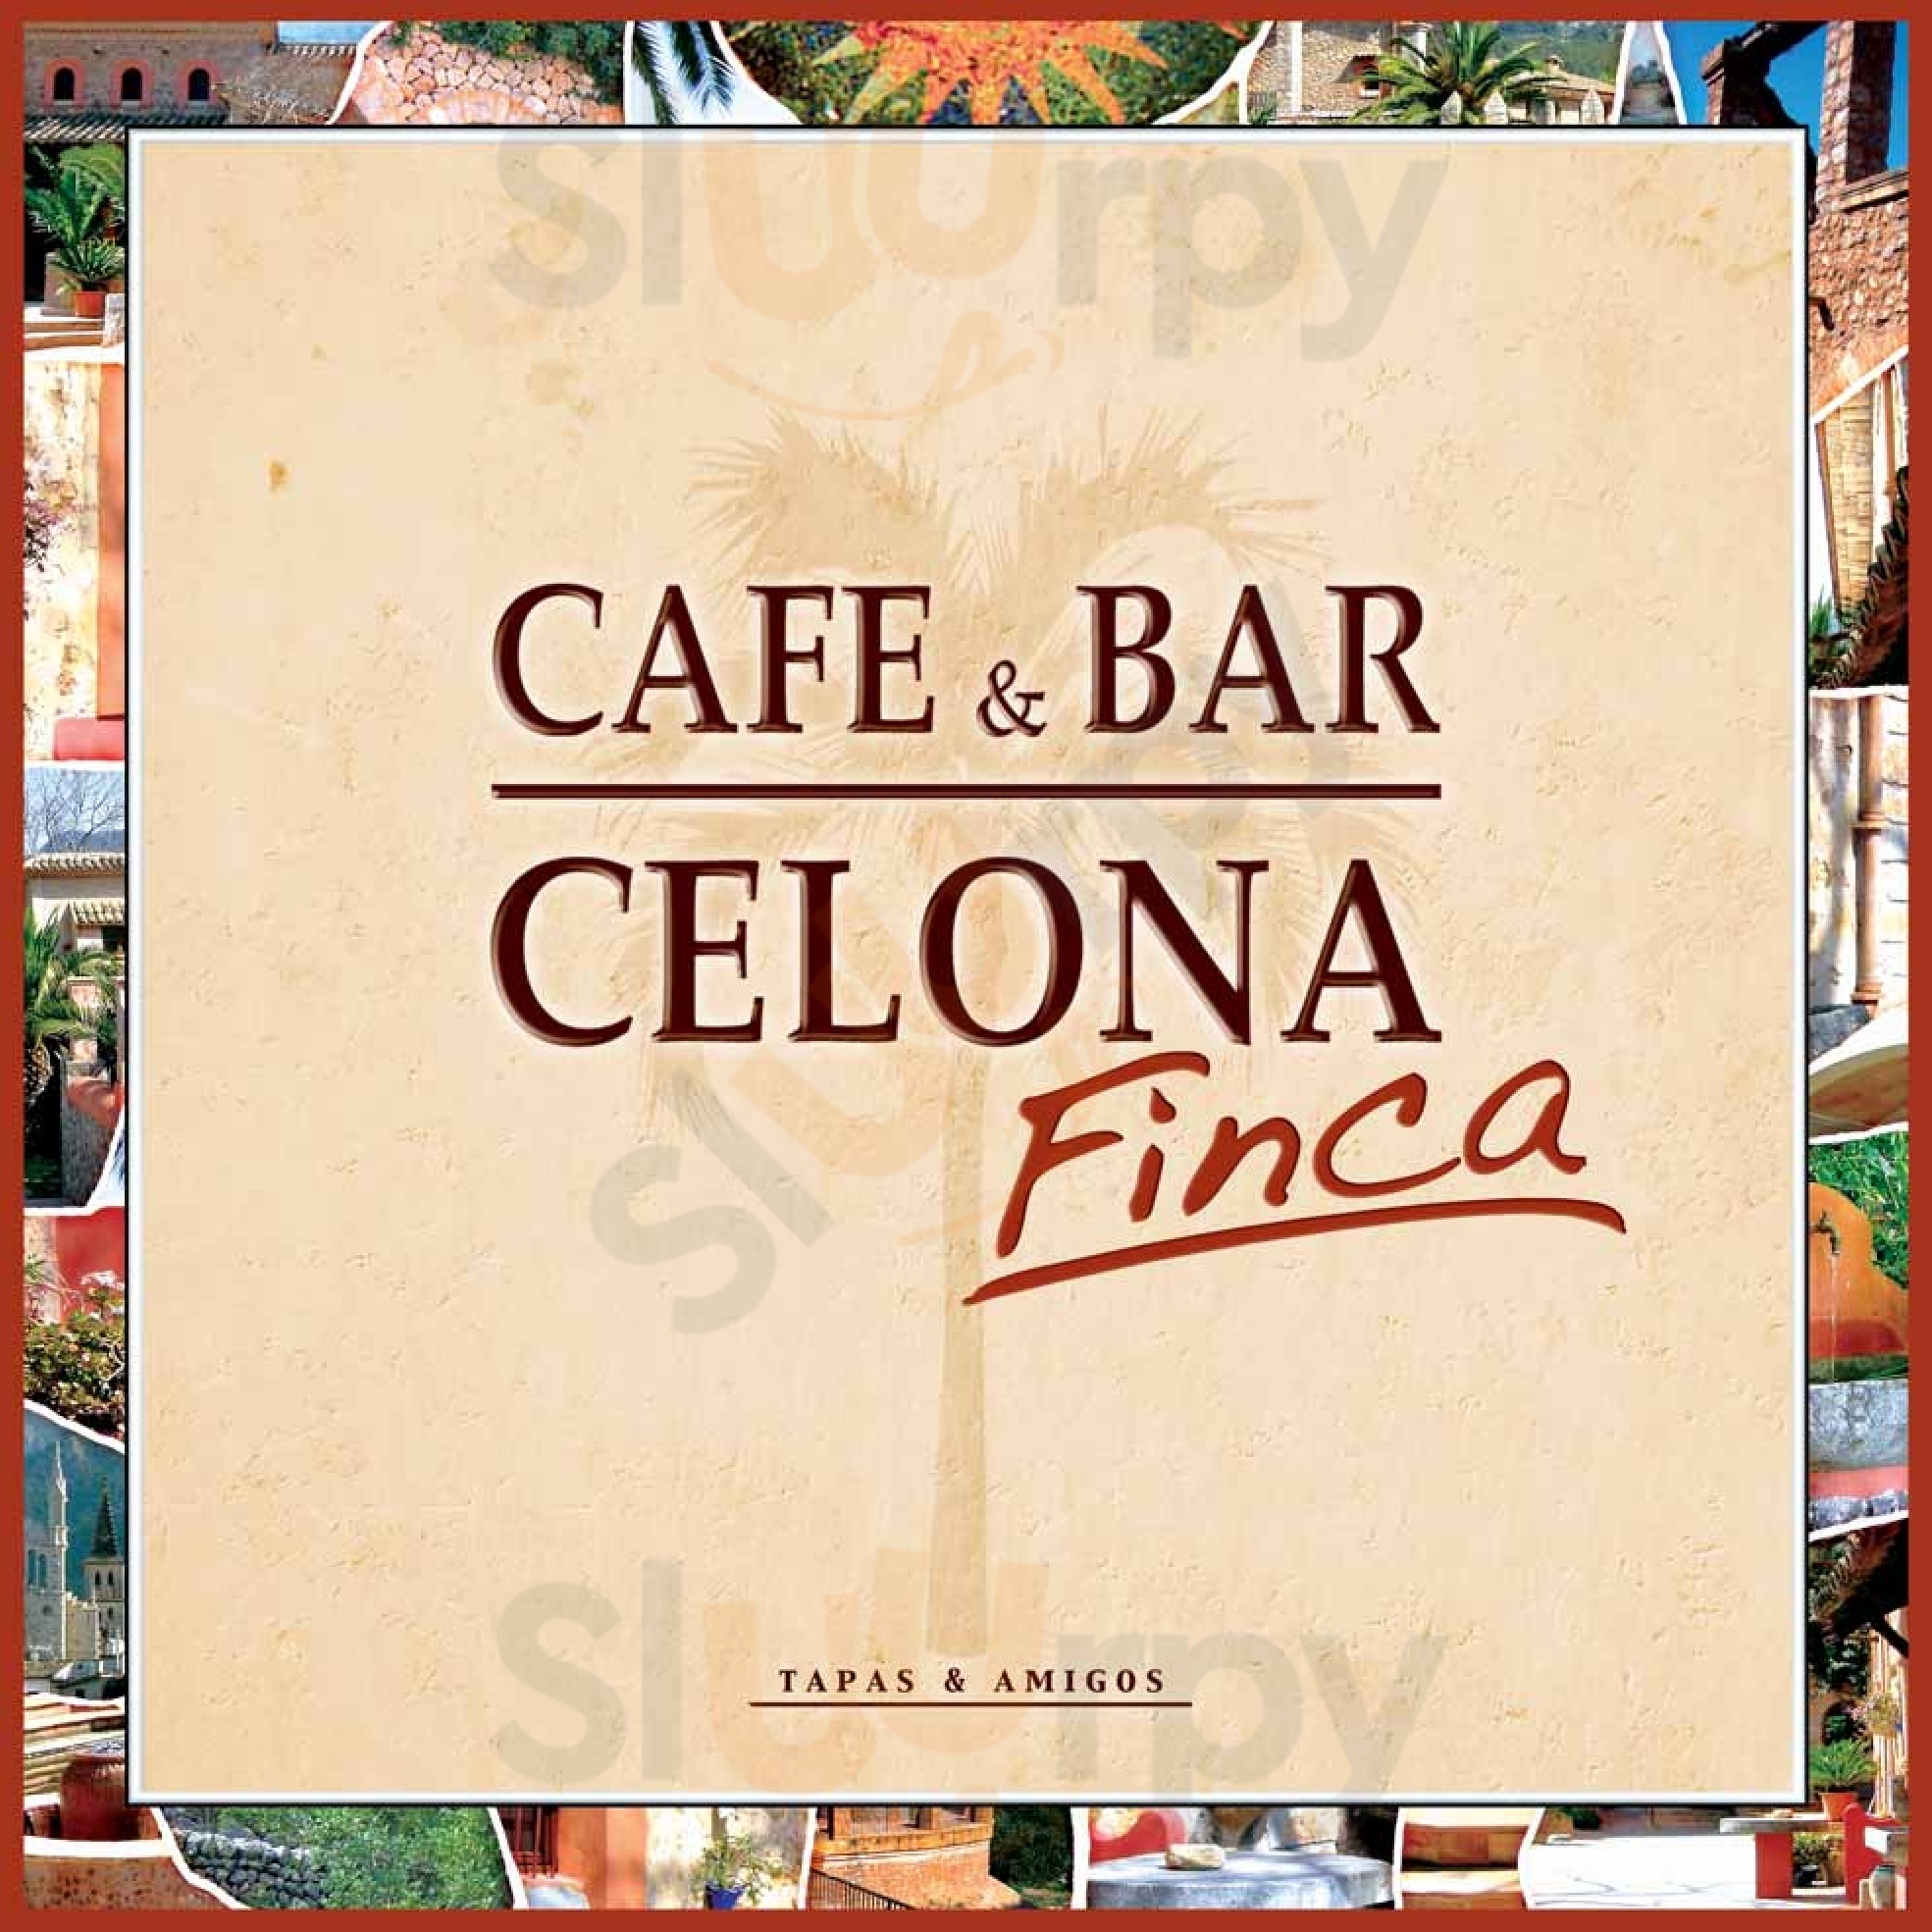 Finca & Bar Celona Nürnberg Nürnberg Menu - 1